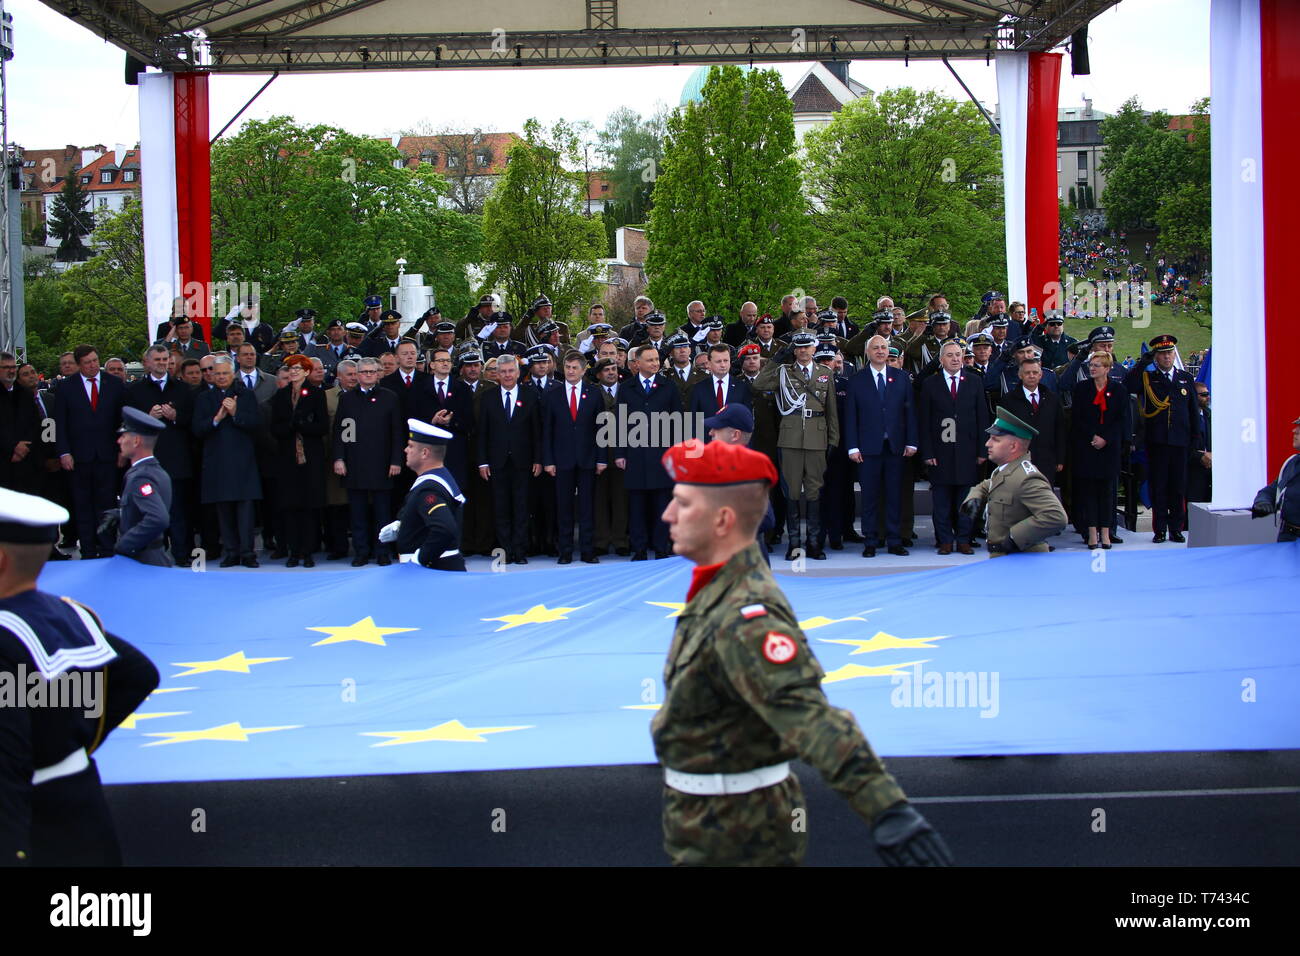 Polen: Präsident Andrzej Duda, Premierminister Mateusz Morawiecki und Regierungsmitglieder feiern Tag der Verfassung. Stockfoto